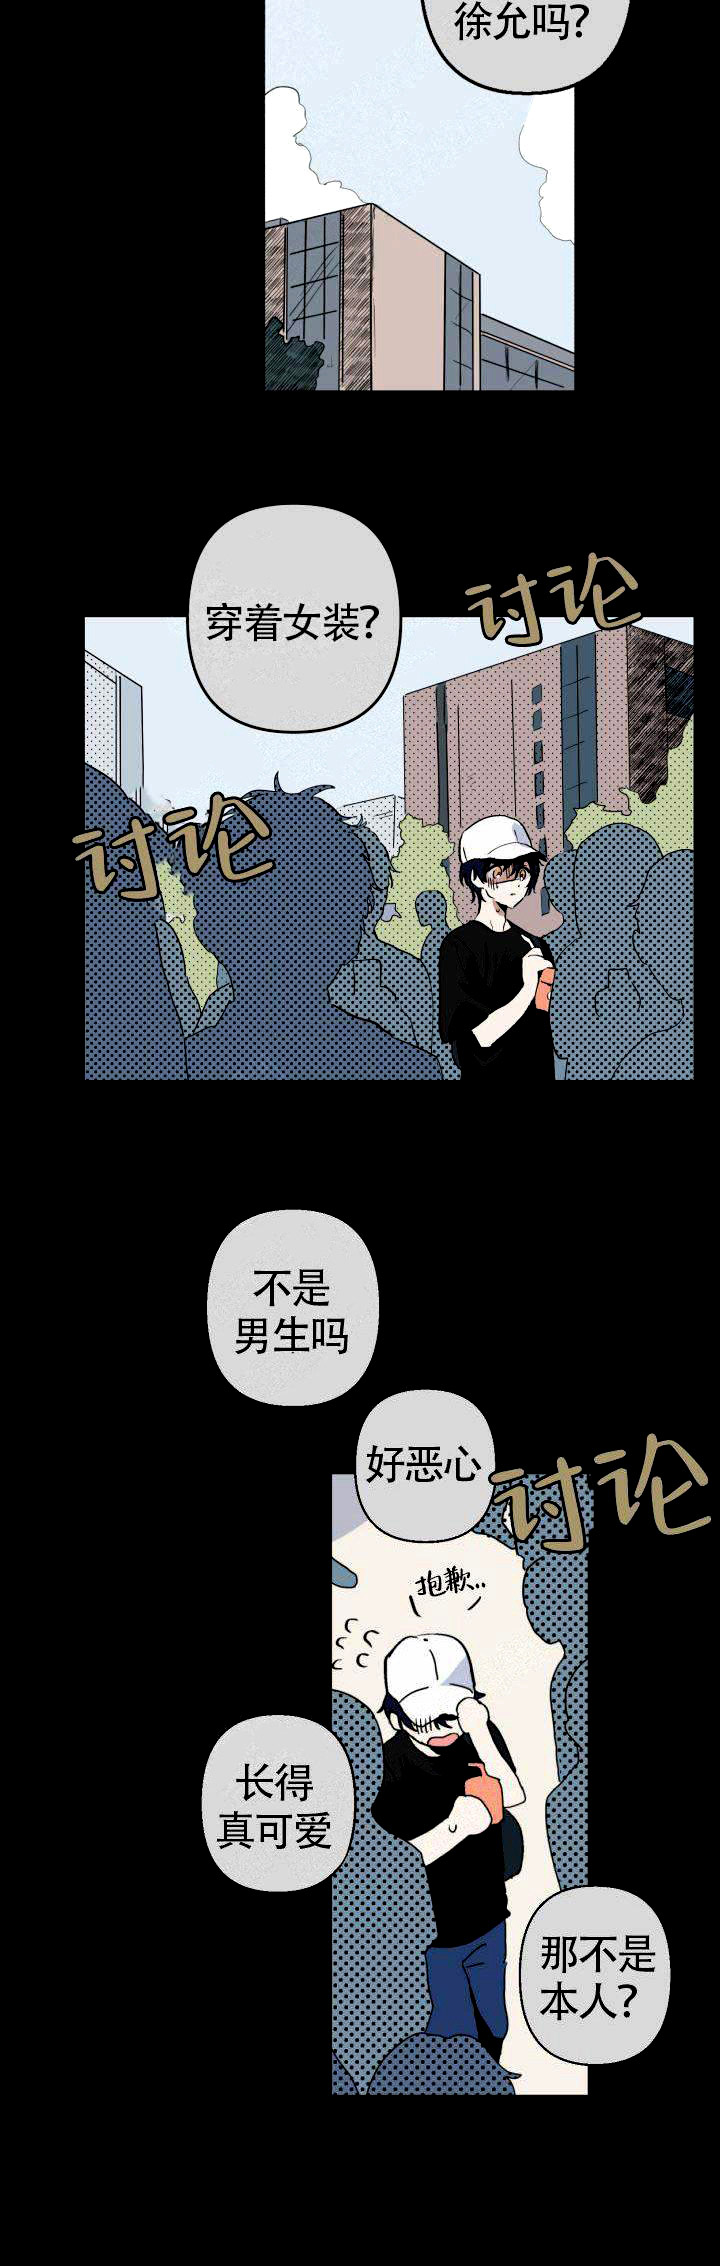 《一见倾心》漫画韩漫完结版 — 全集免费阅读